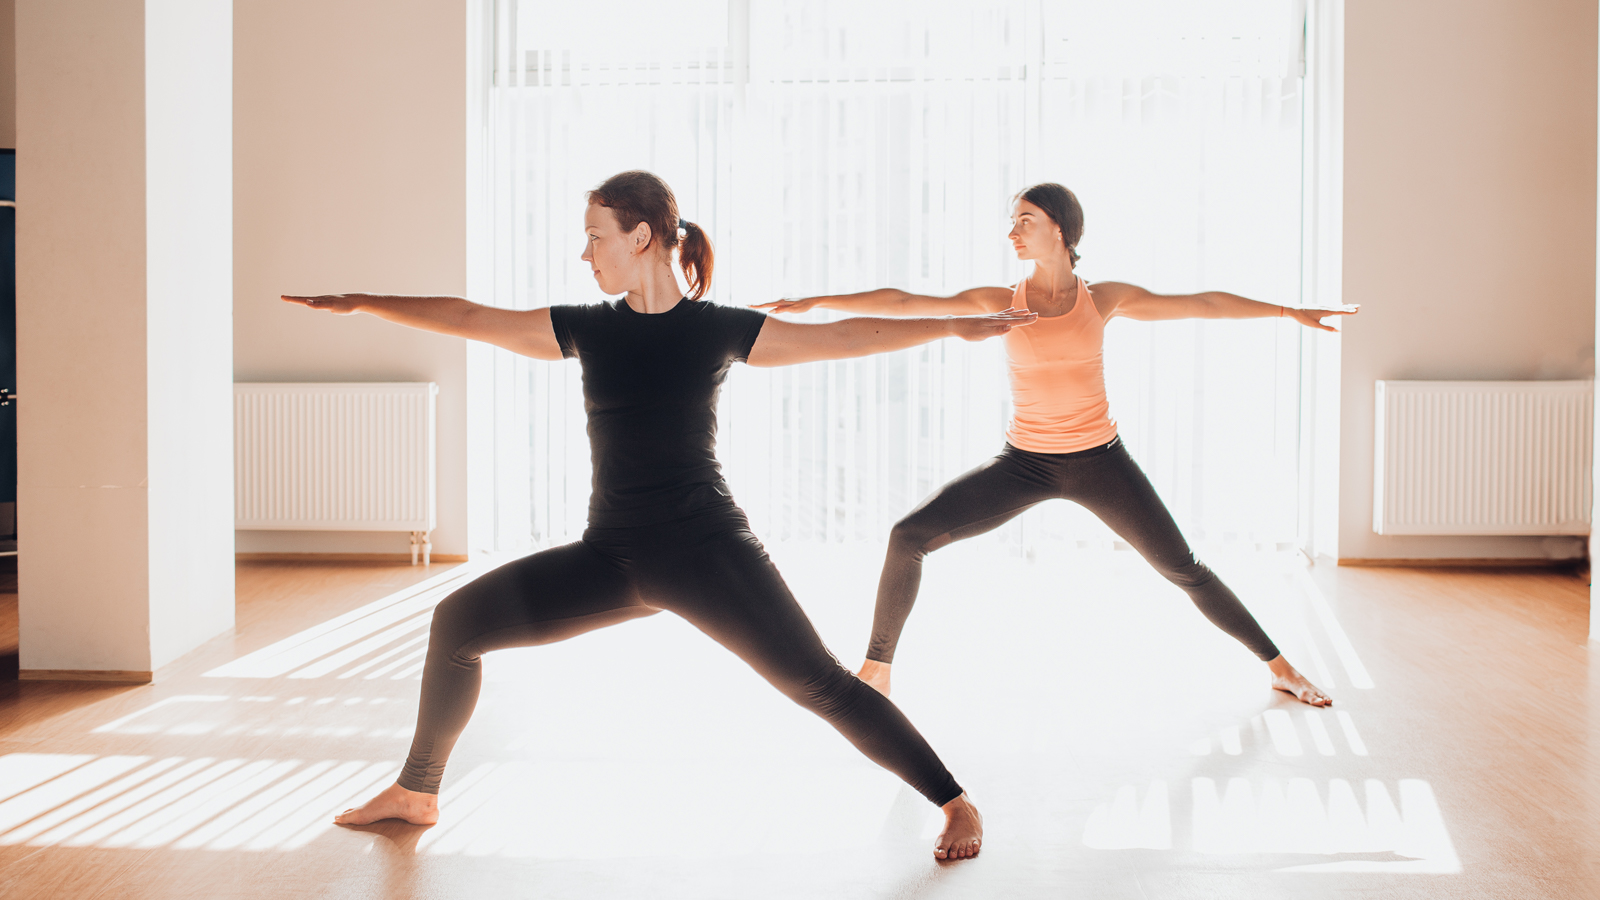 Yoga core là một trong những loại yoga giúp củng cố và tăng sức mạnh cho cơ thể, tâm trí và tinh thần. Việc thực hành loại này thường xuyên giúp mỗi người tự giao tiếp với cơ thể và tiếp cận cốt lõi tinh thần để có thể đạt được sức mạnh bên trong. 